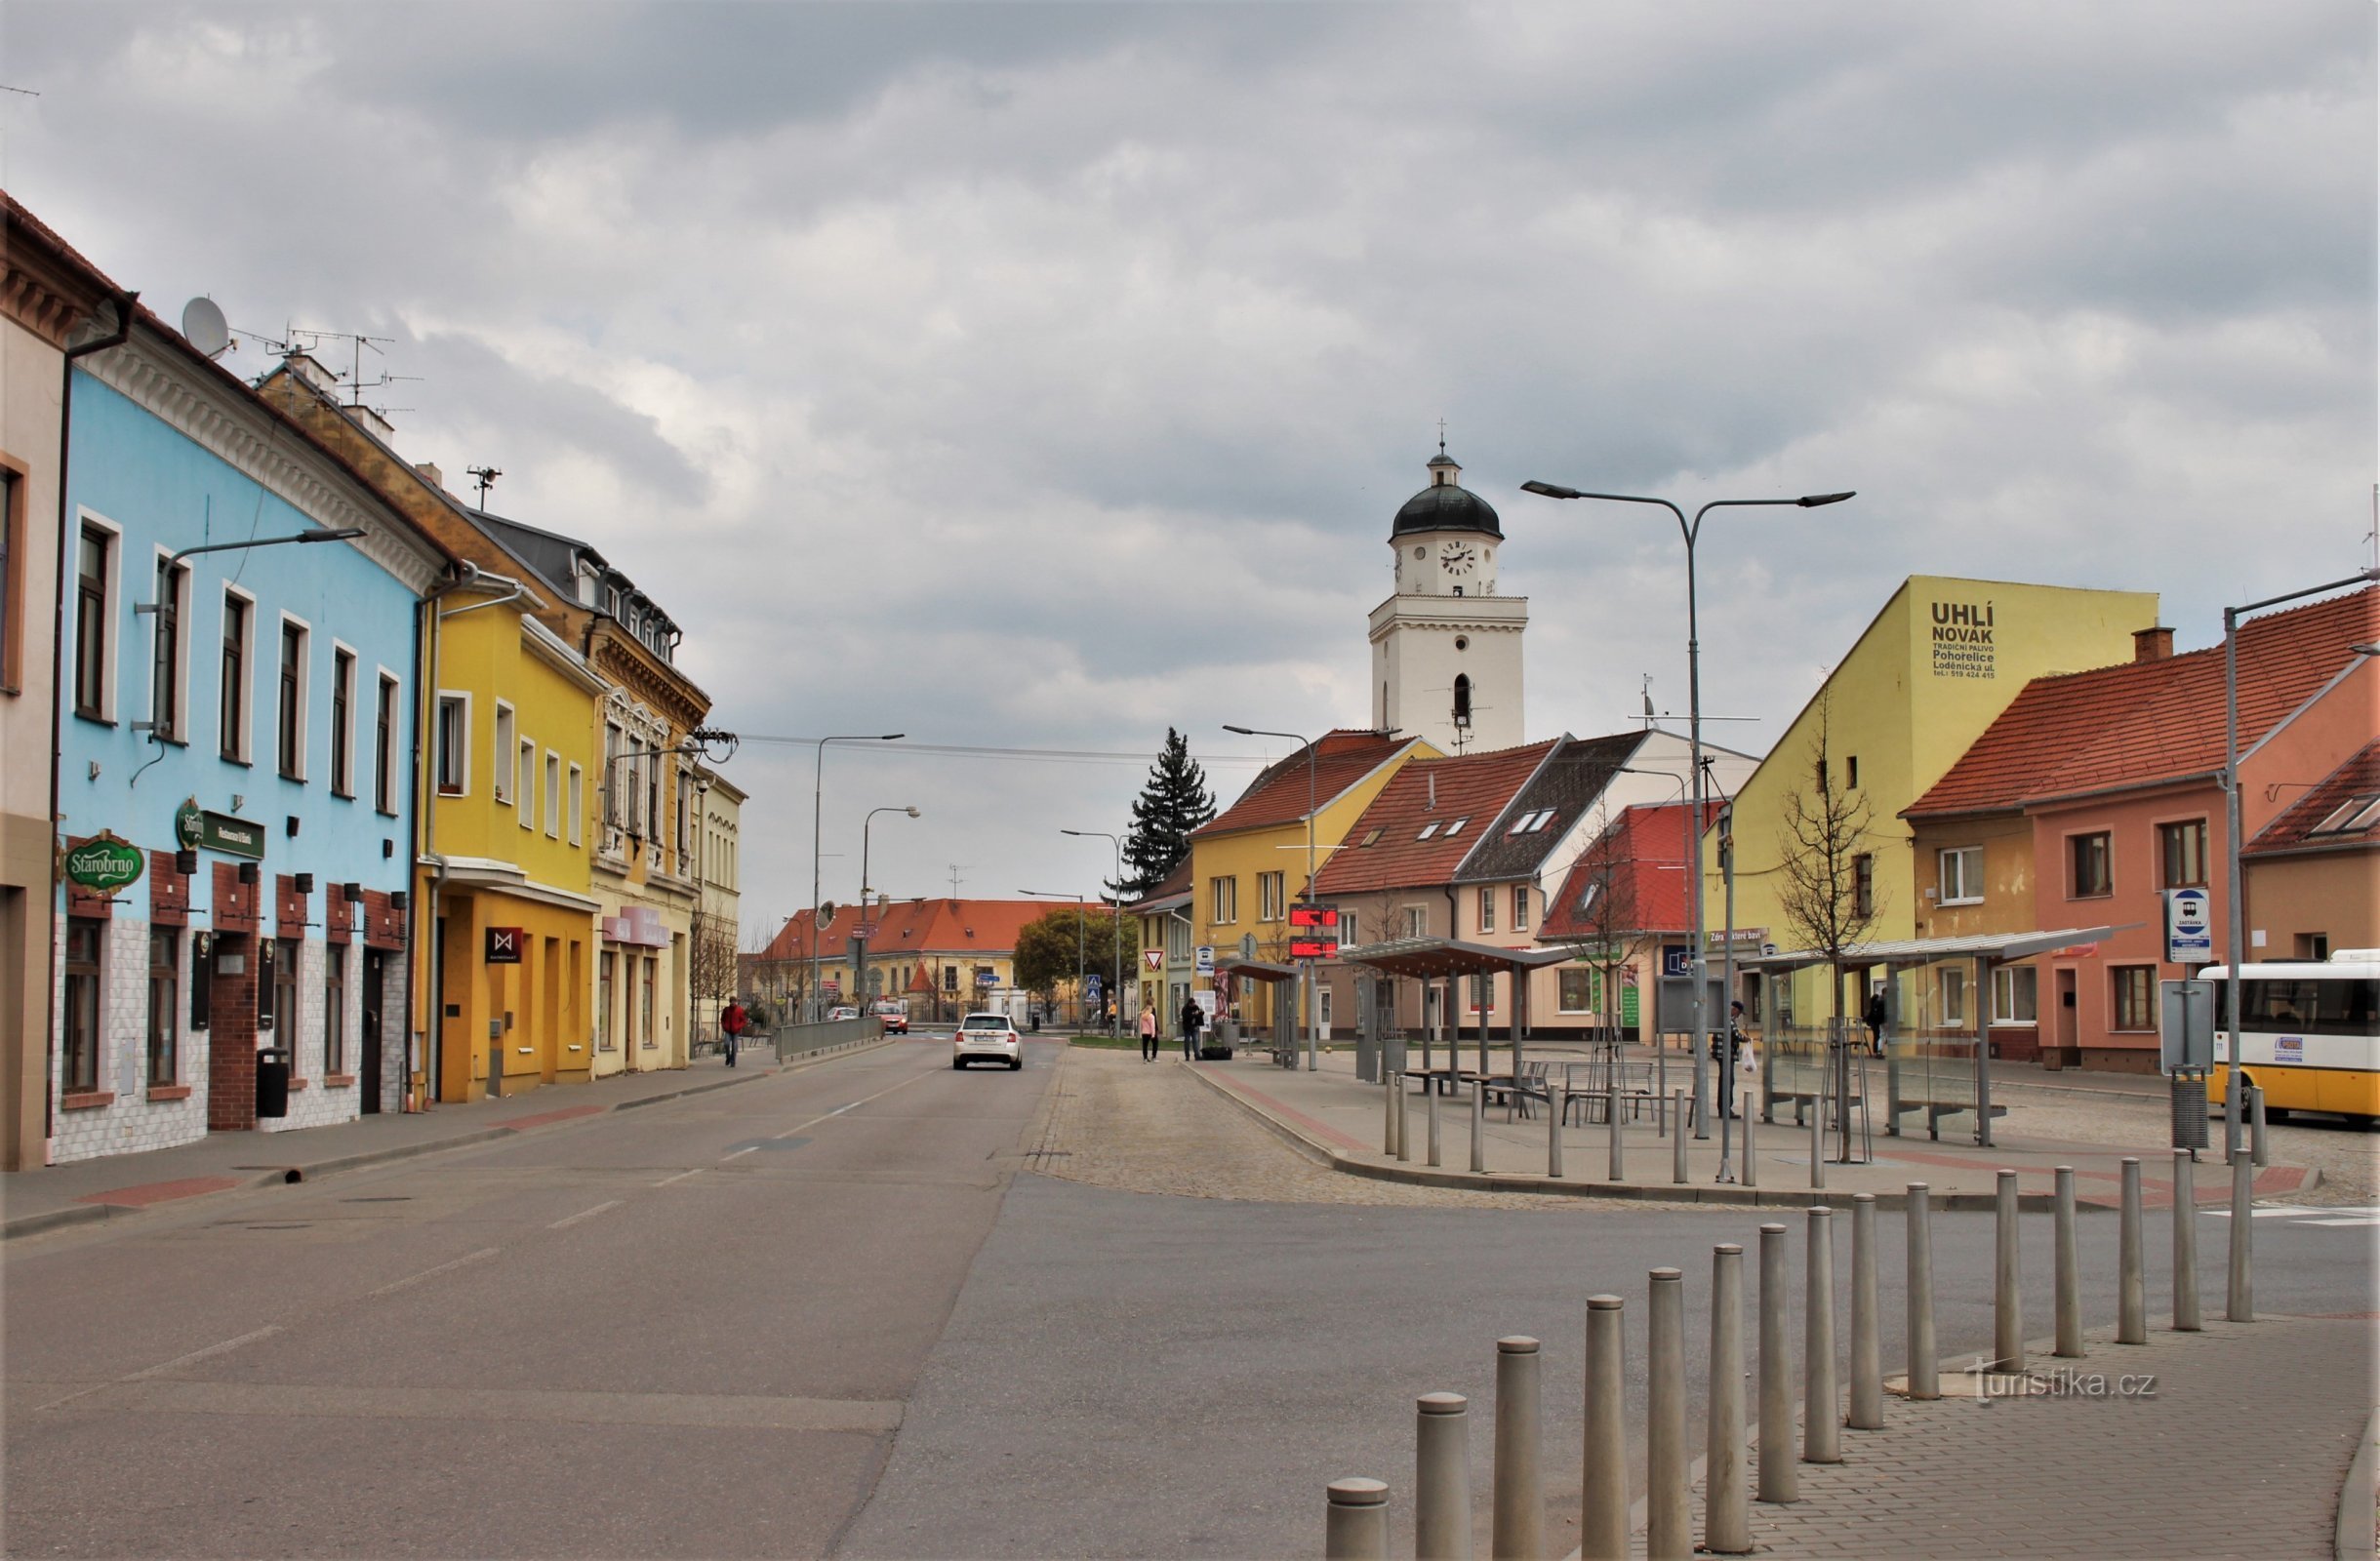 Stația de autobuz Pohořelické în partea extinsă a străzii Lidicka